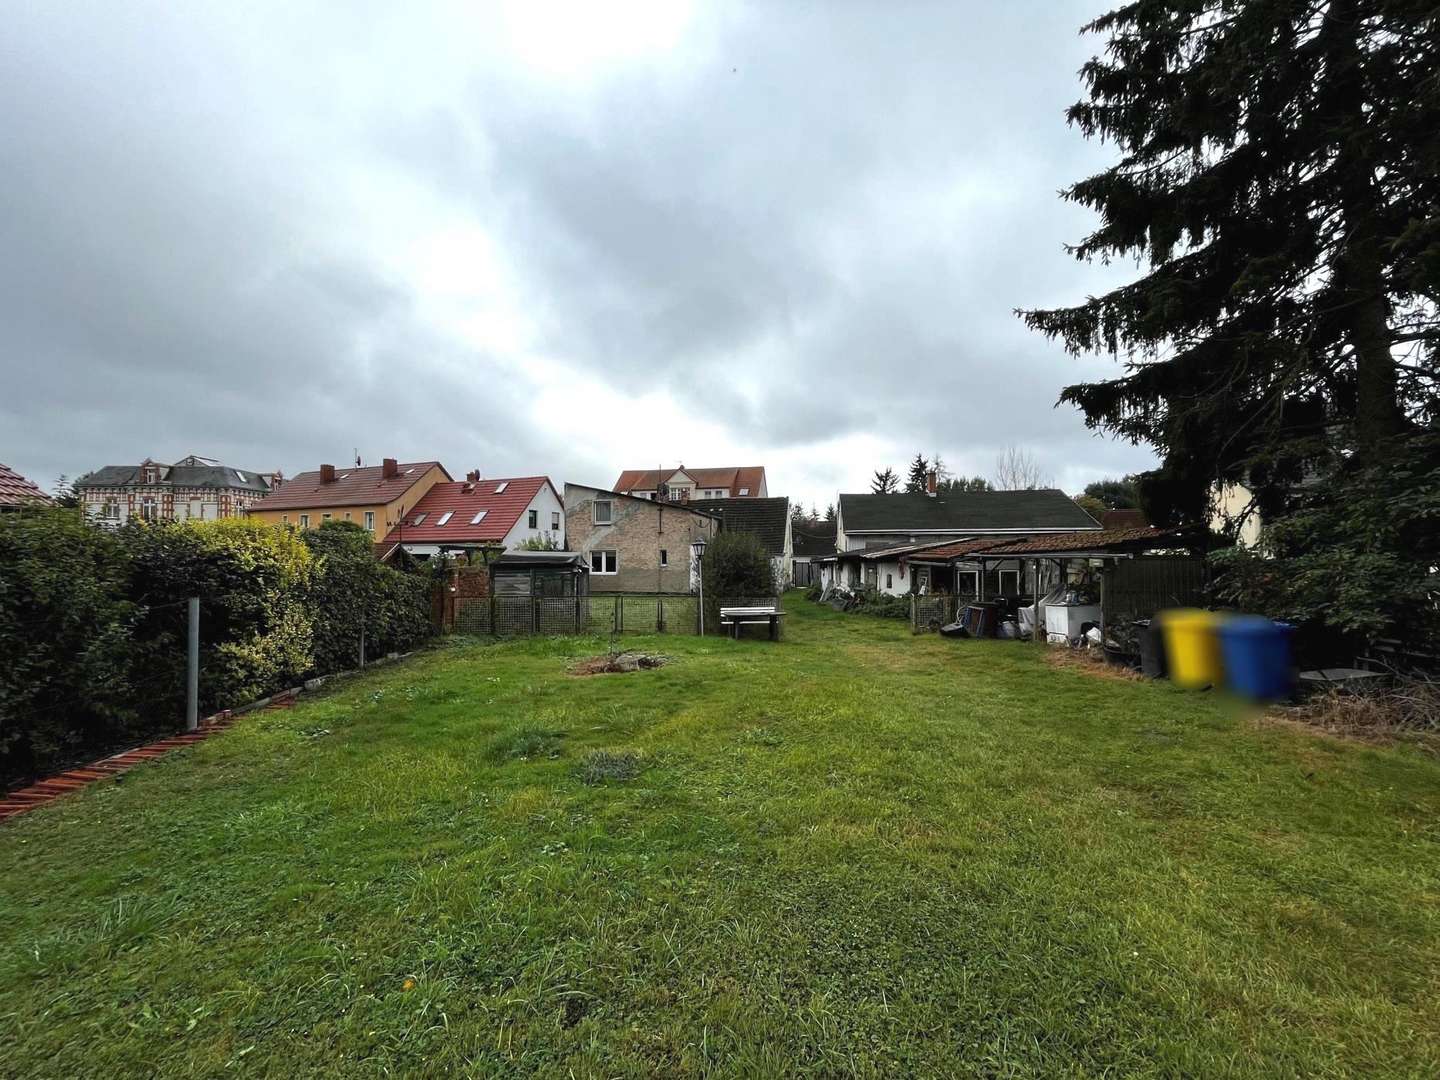 Gesamtgrundstück - Grundstück in 16845 Neustadt mit 648m² kaufen